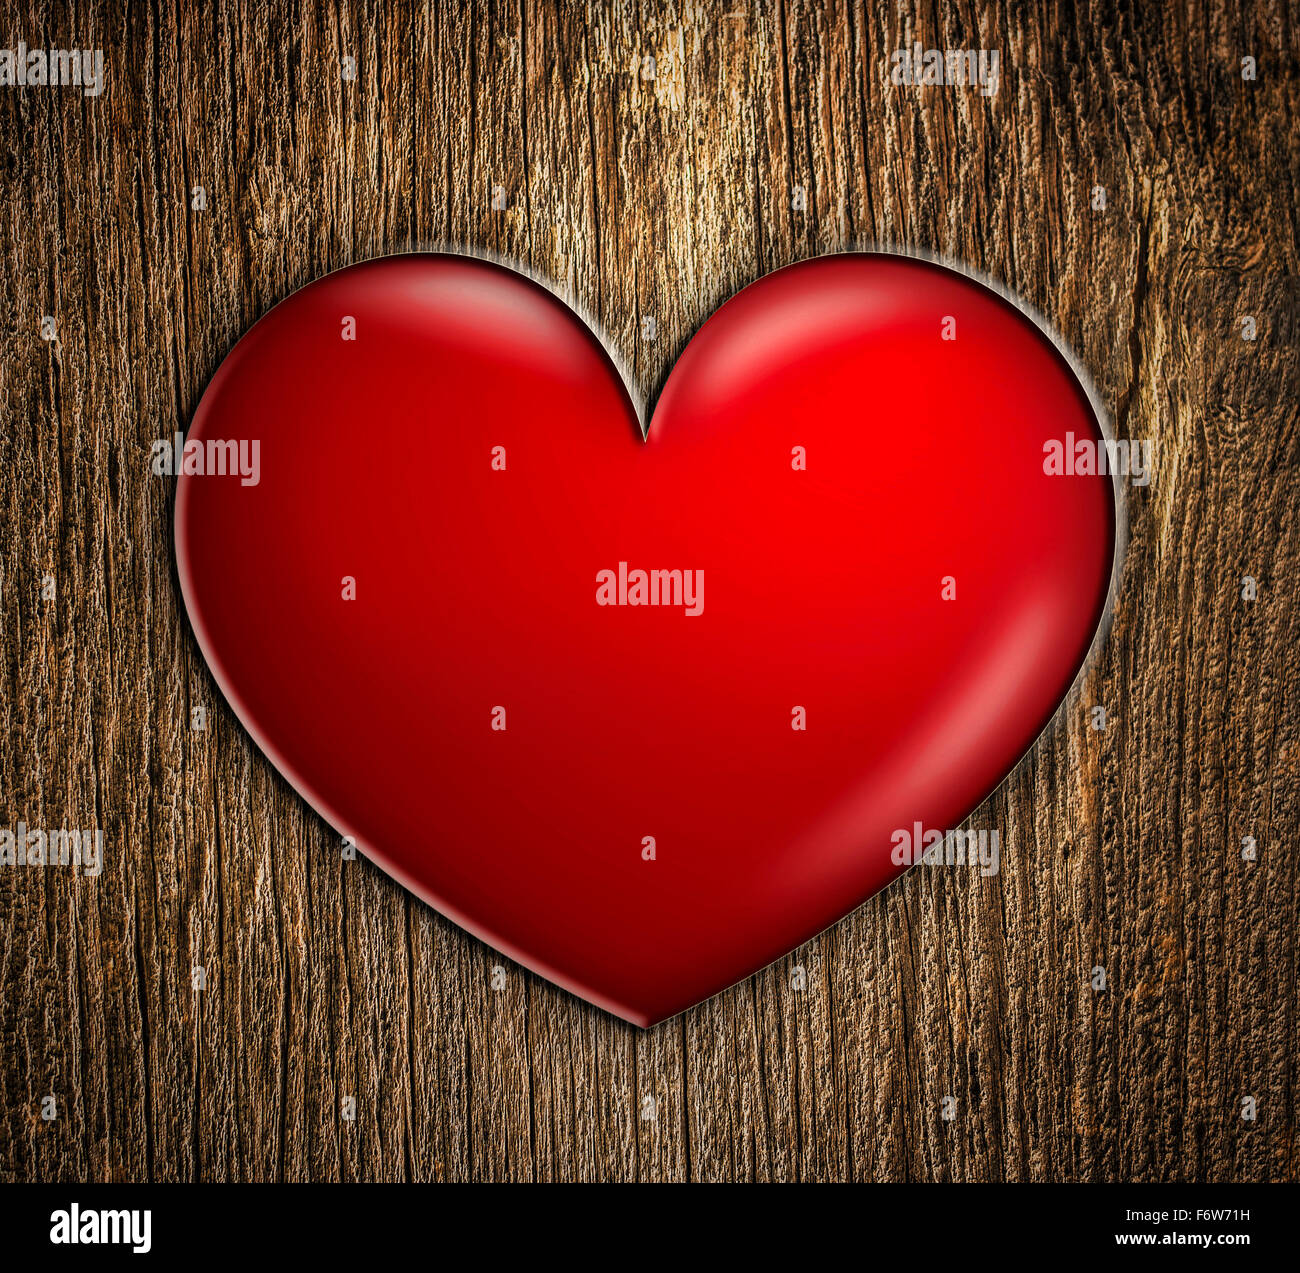 Coeur rouge sur bois Banque D'Images